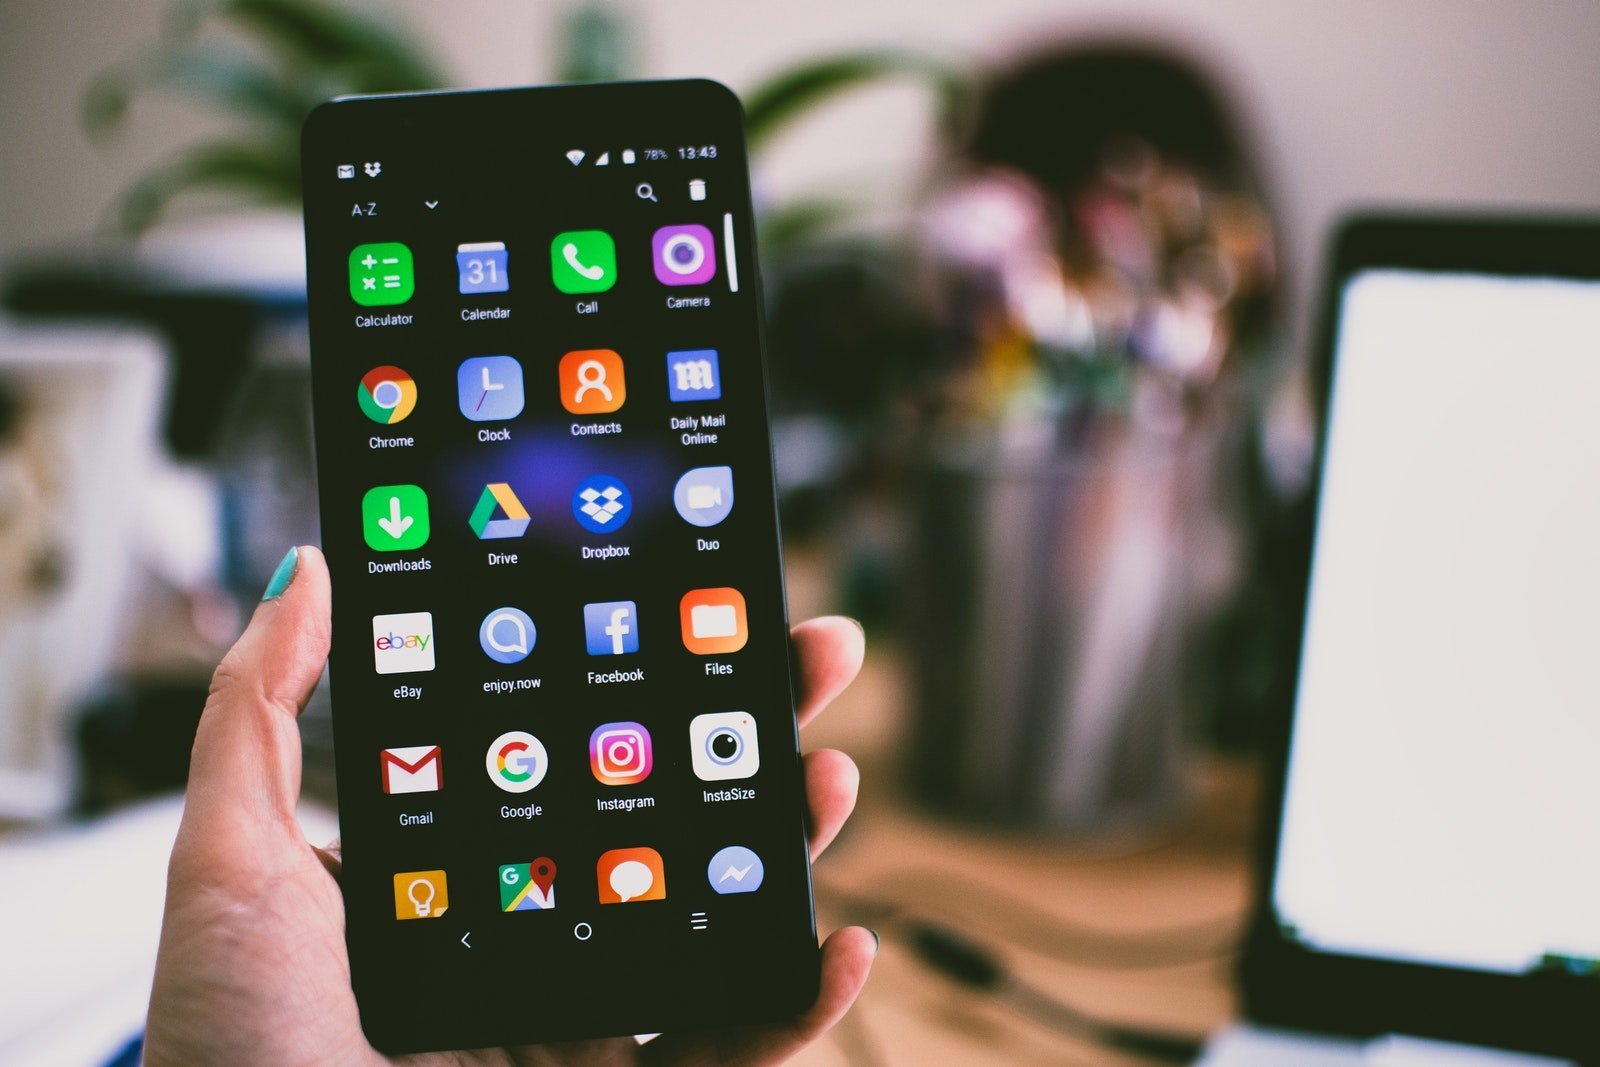 Android Telefonlara Eklenmesi Planlanan 6 Sıra Dışı Özellik